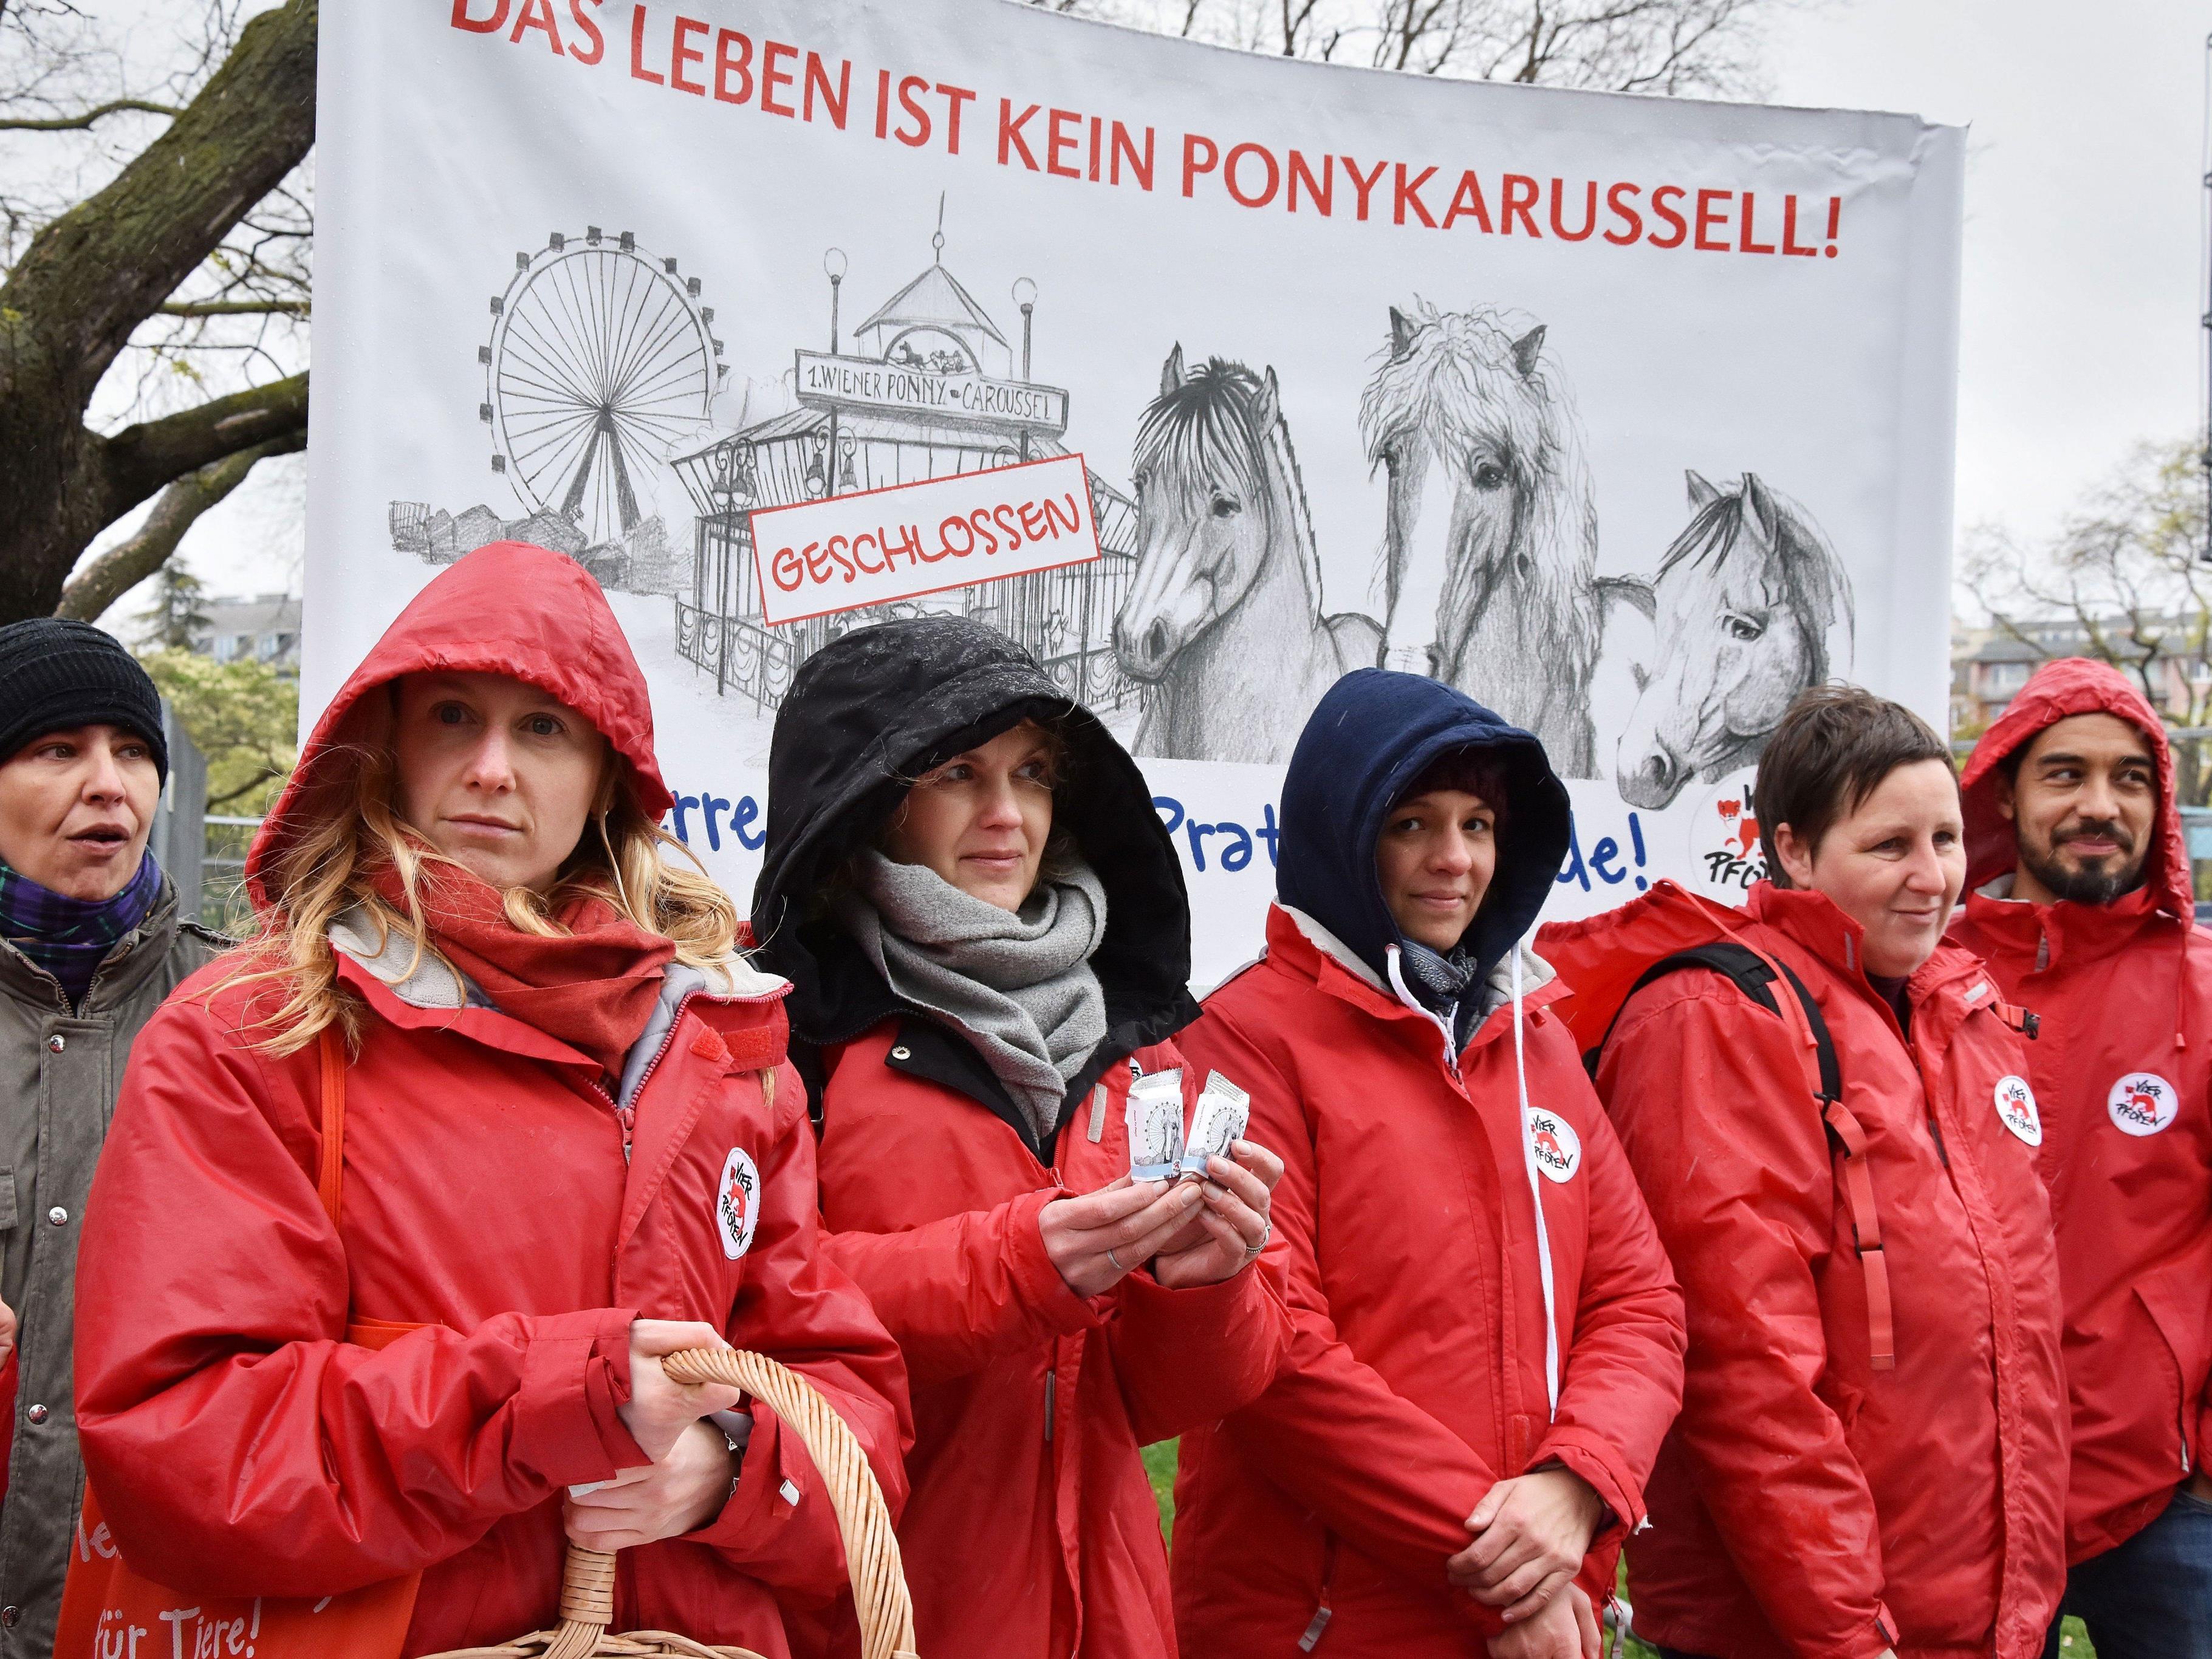 Beim Protest gegen den weiteren Einsatz der ehemaligen Ponykarussell-Pferde auf der Reitbahn